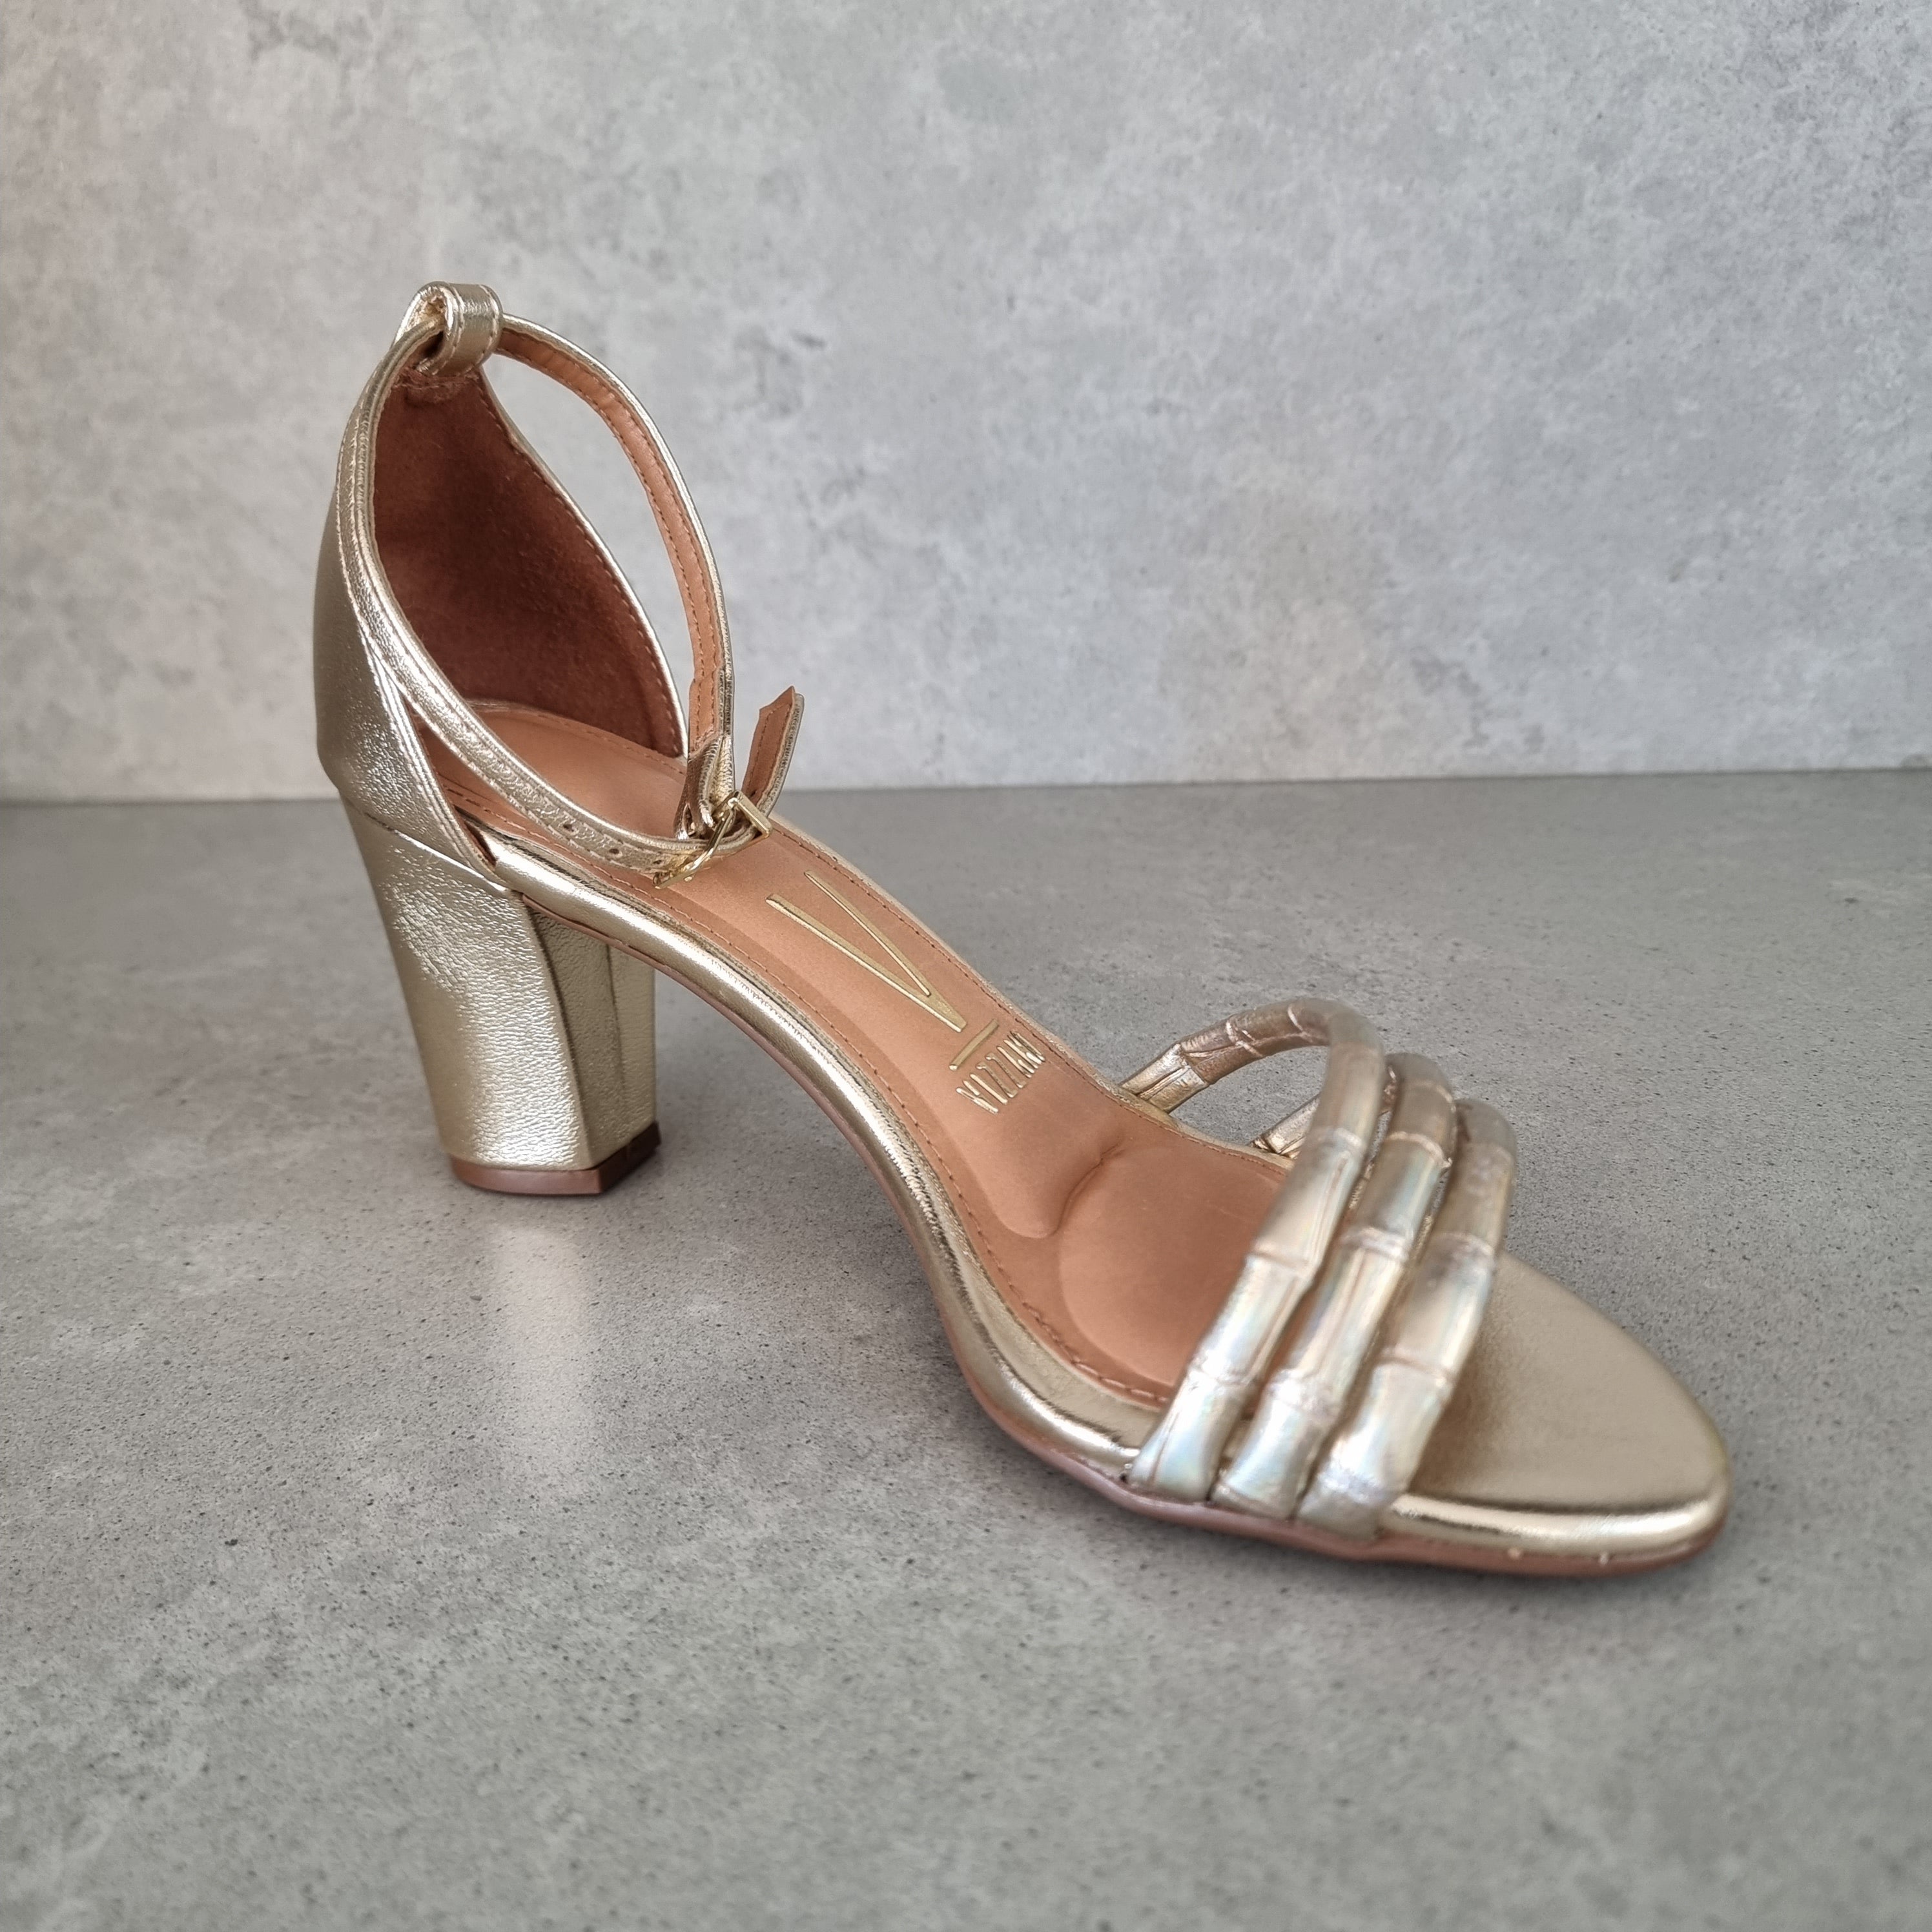 Vizzano 6262-1207 Block Heel Sandal in Golden